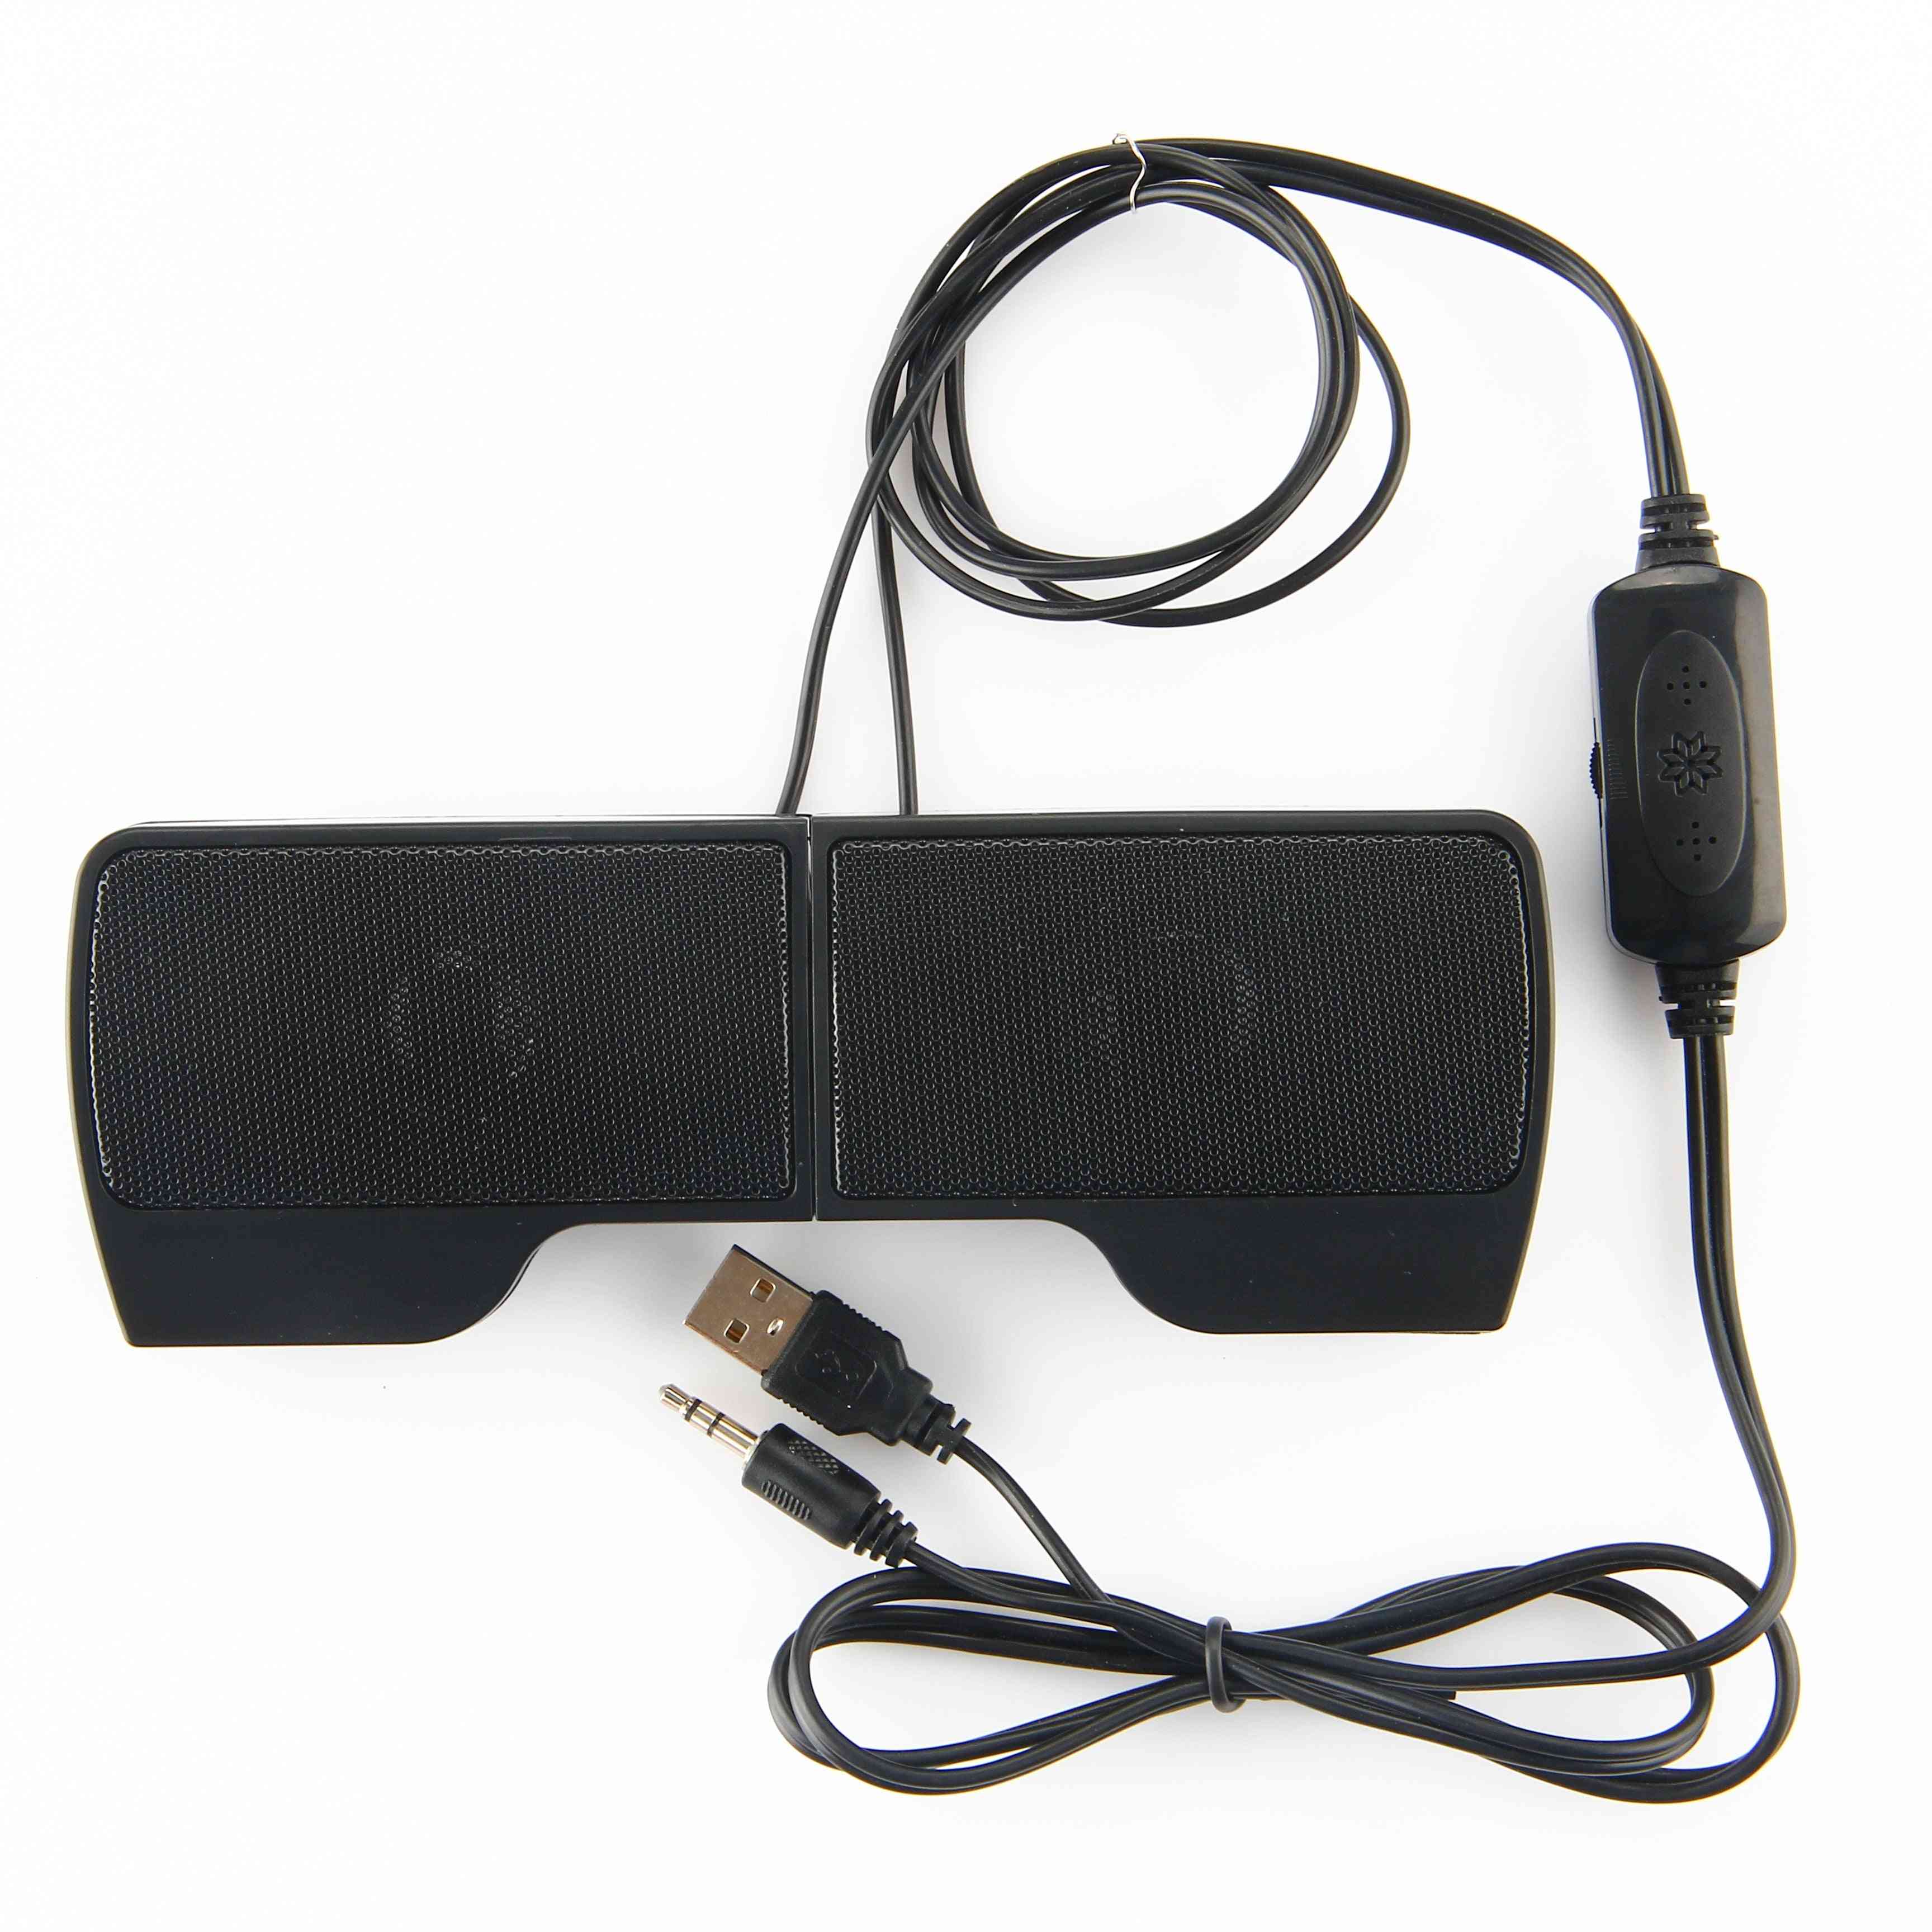 Bærbar 2.0 mini stereohøjttaler usb 3,5 mm kablet controller musikafspiller højttaler clip-on soundbar til notebook / pc-computer (sort) -